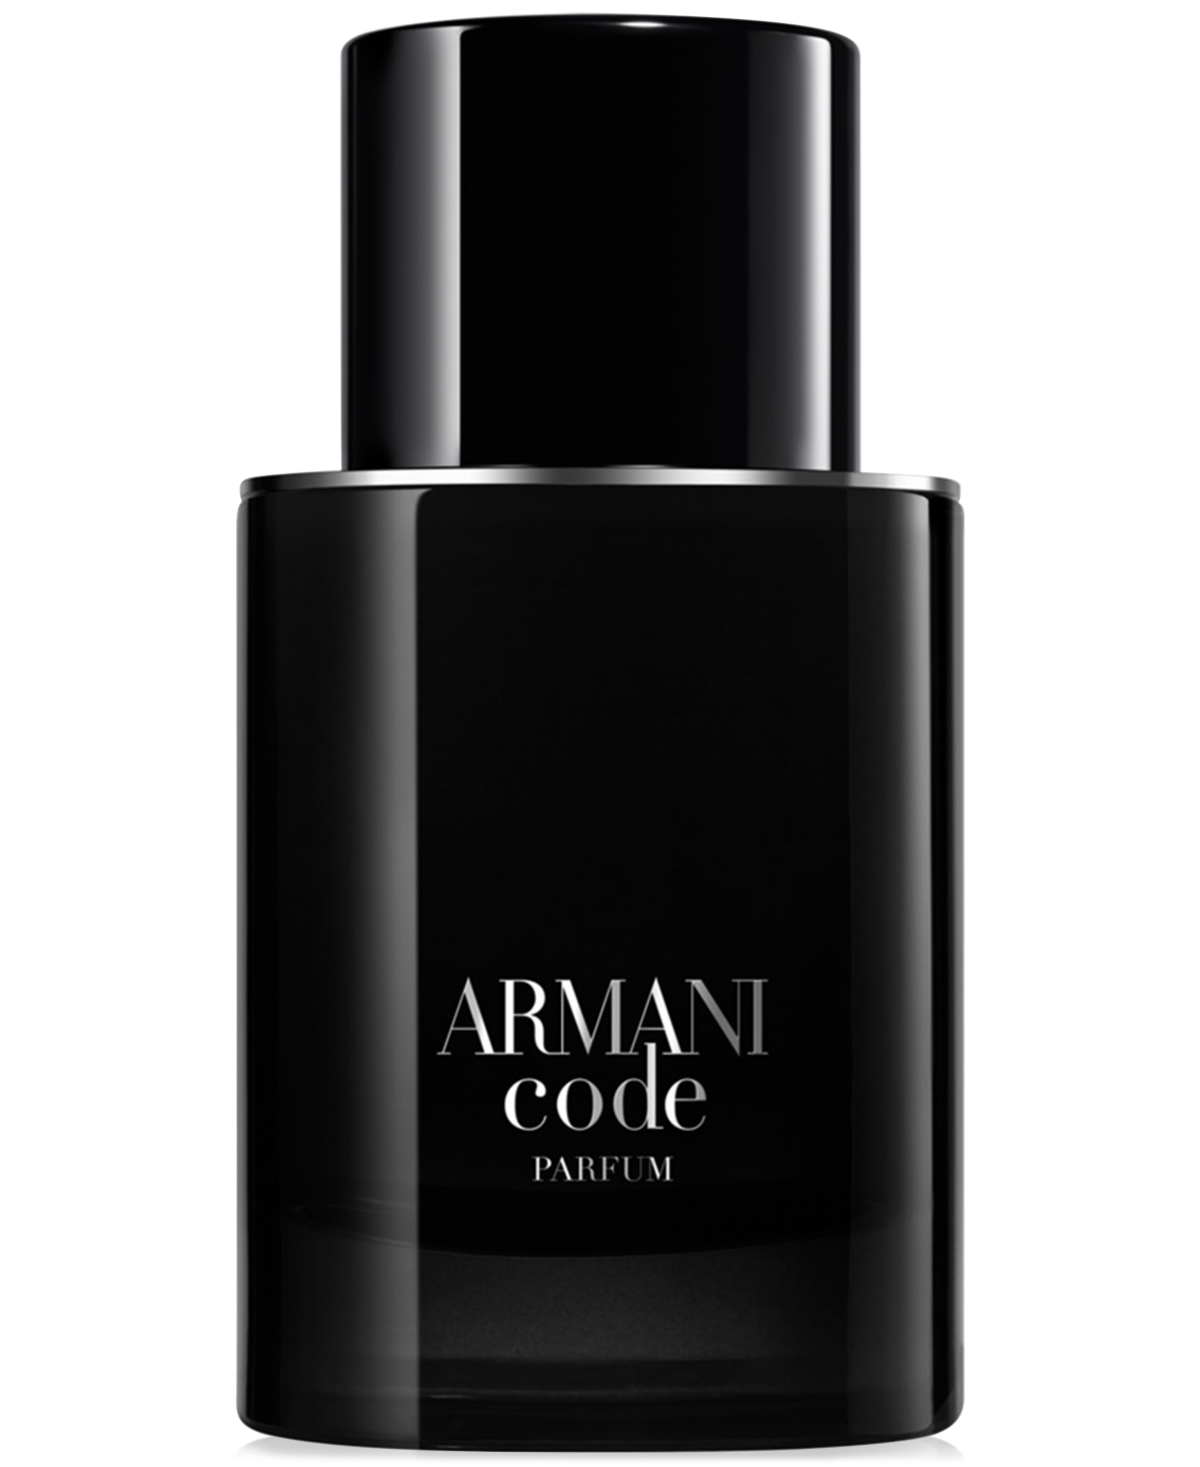 Giorgio Armani Armani Beauty Men's Armani Code Parfum, 1.7oz. In No Color